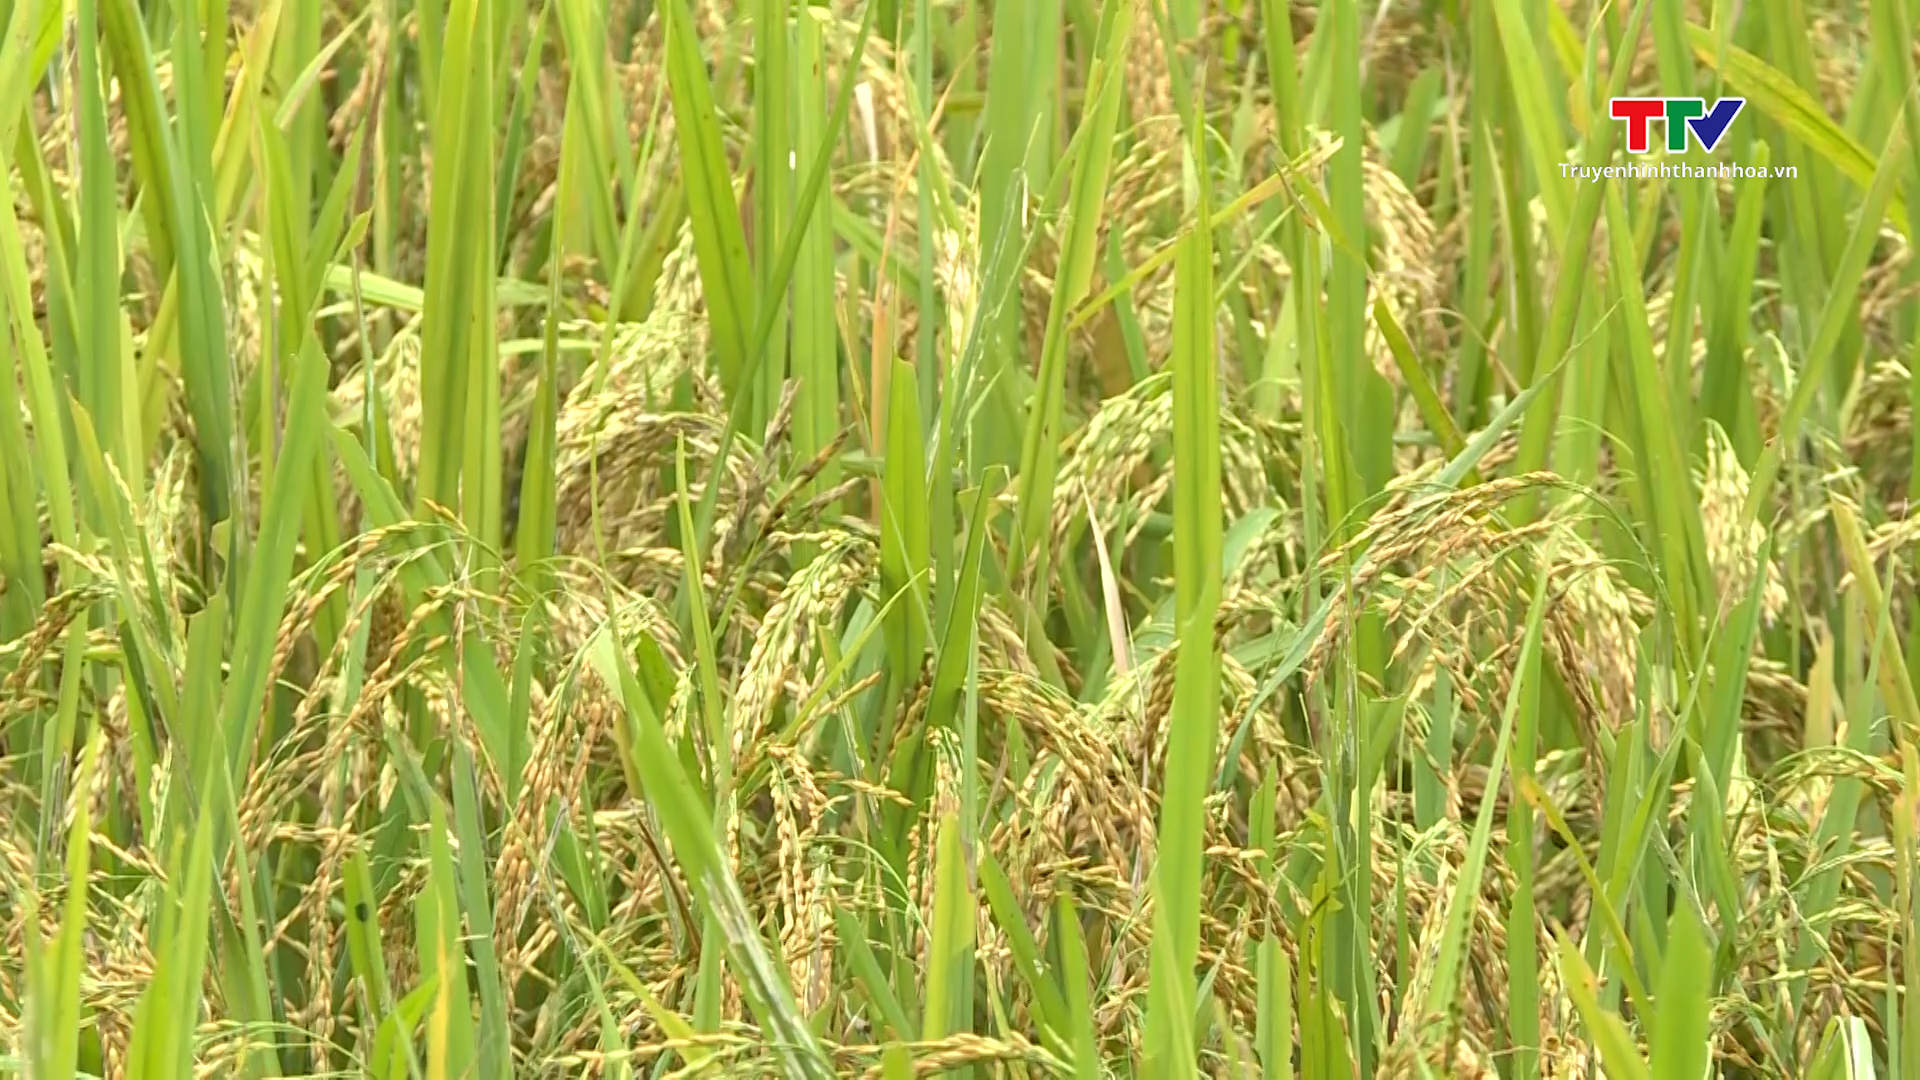 Các doanh nghiệp sản xuất và kinh doanh lúa gạo gặp khó khăn khi giá gạo tăng cao - Ảnh 5.